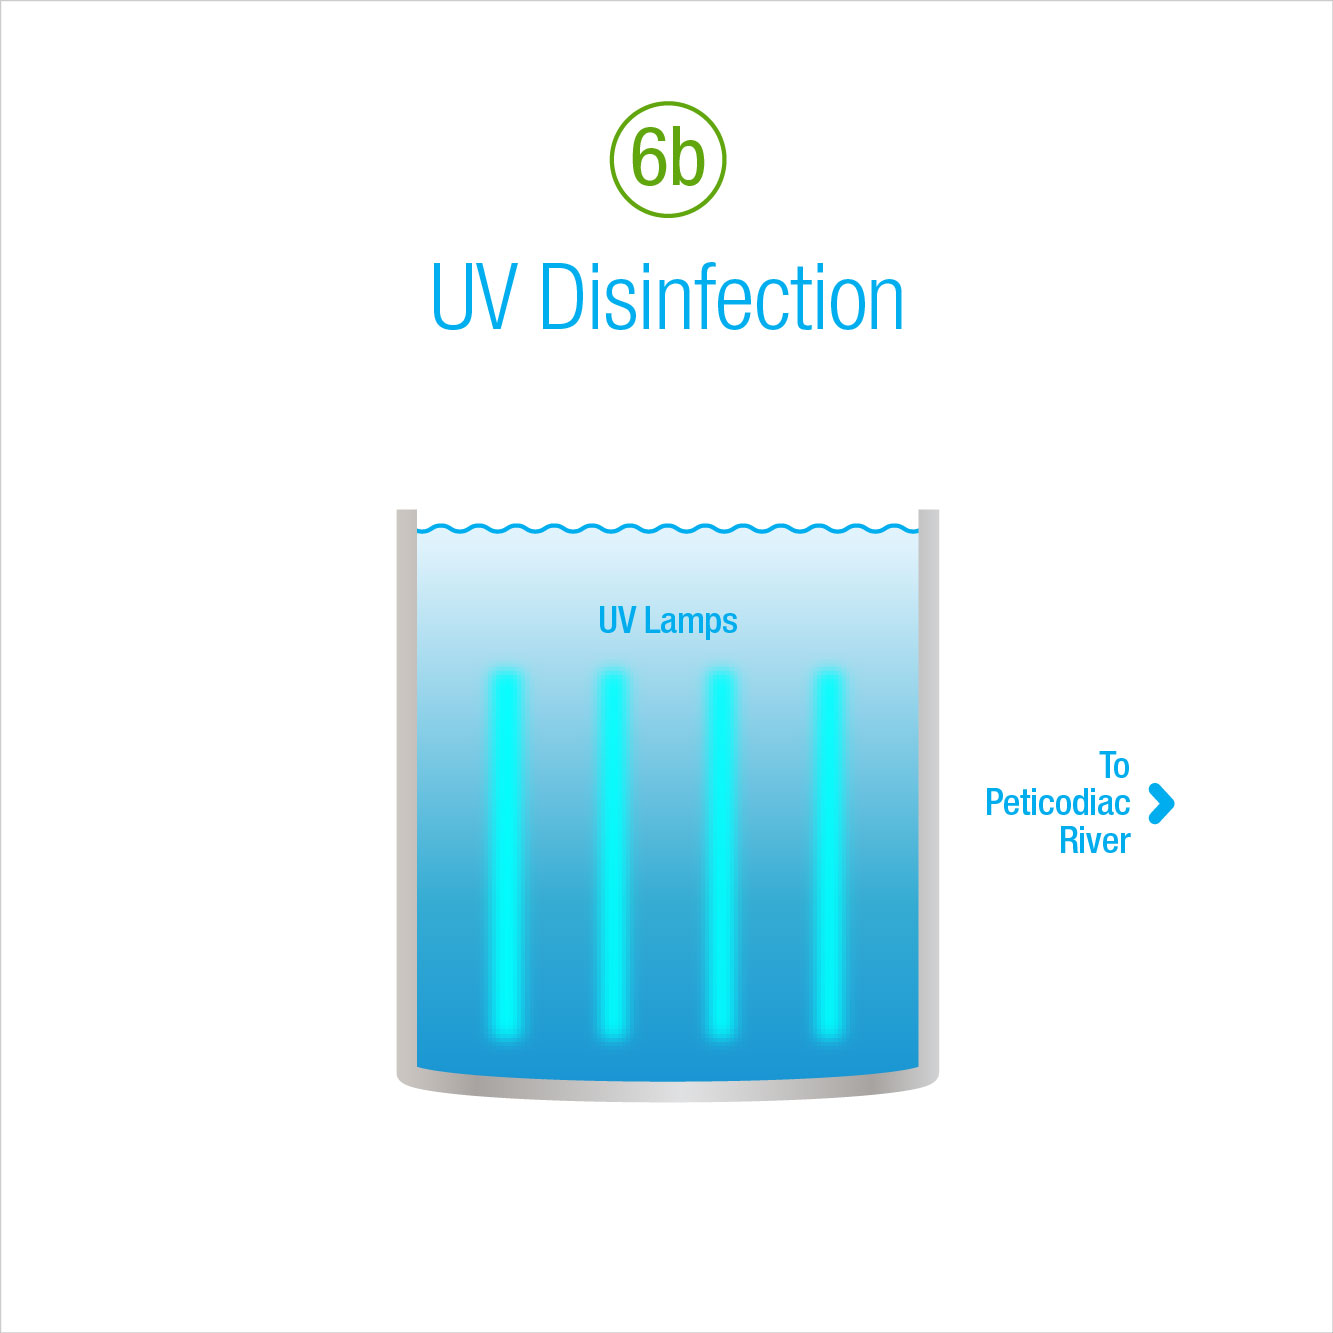 6b: UV Disinfection